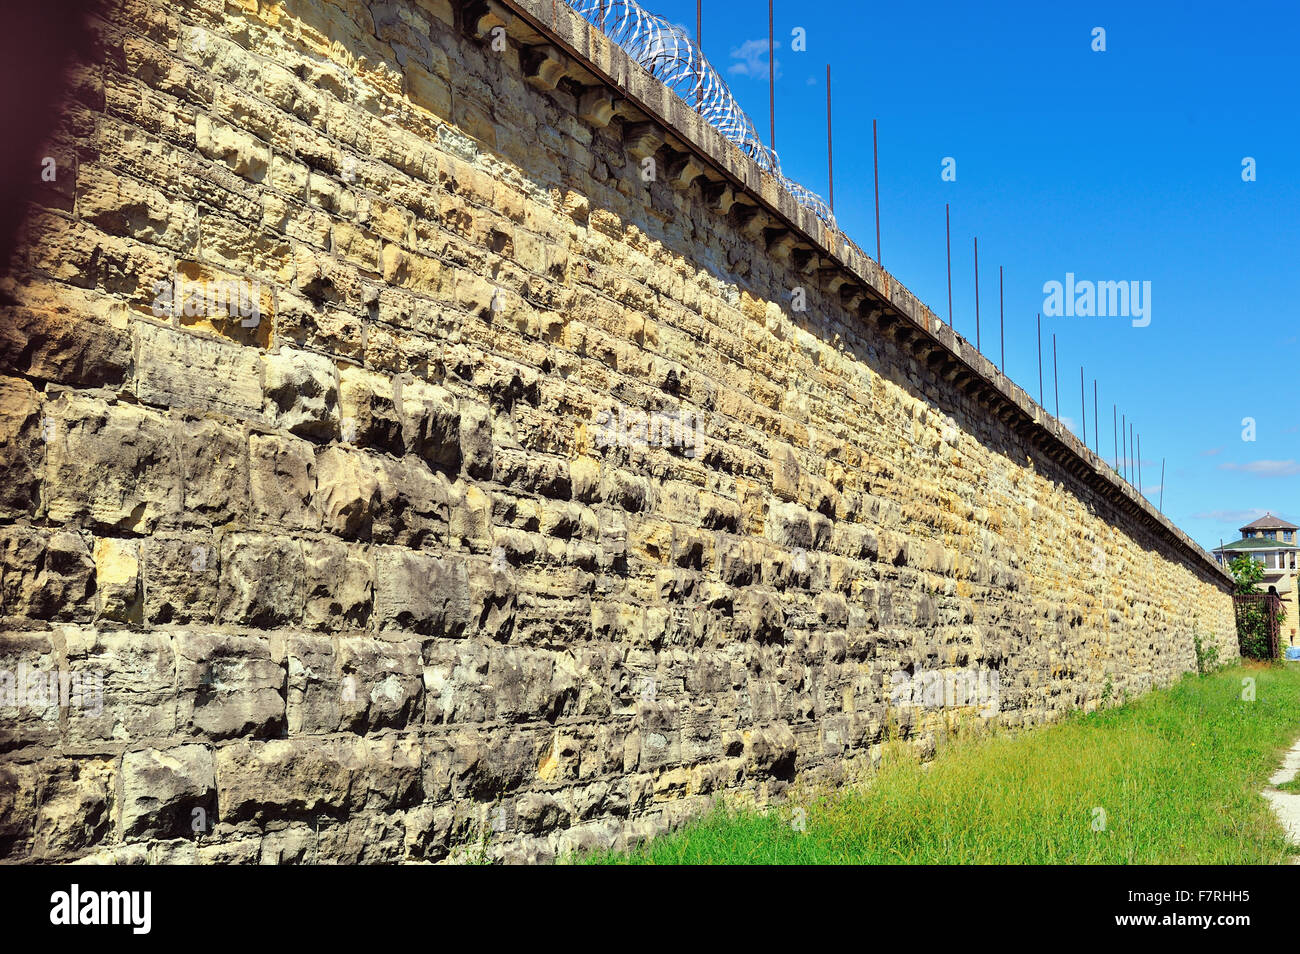 Wand- und entfernten Wachturm an der Joliet Correctional Center (auch als Illinois State Penitentiary und Joliet Gefängnis bekannt). Joliet, Illinois, USA. Stockfoto